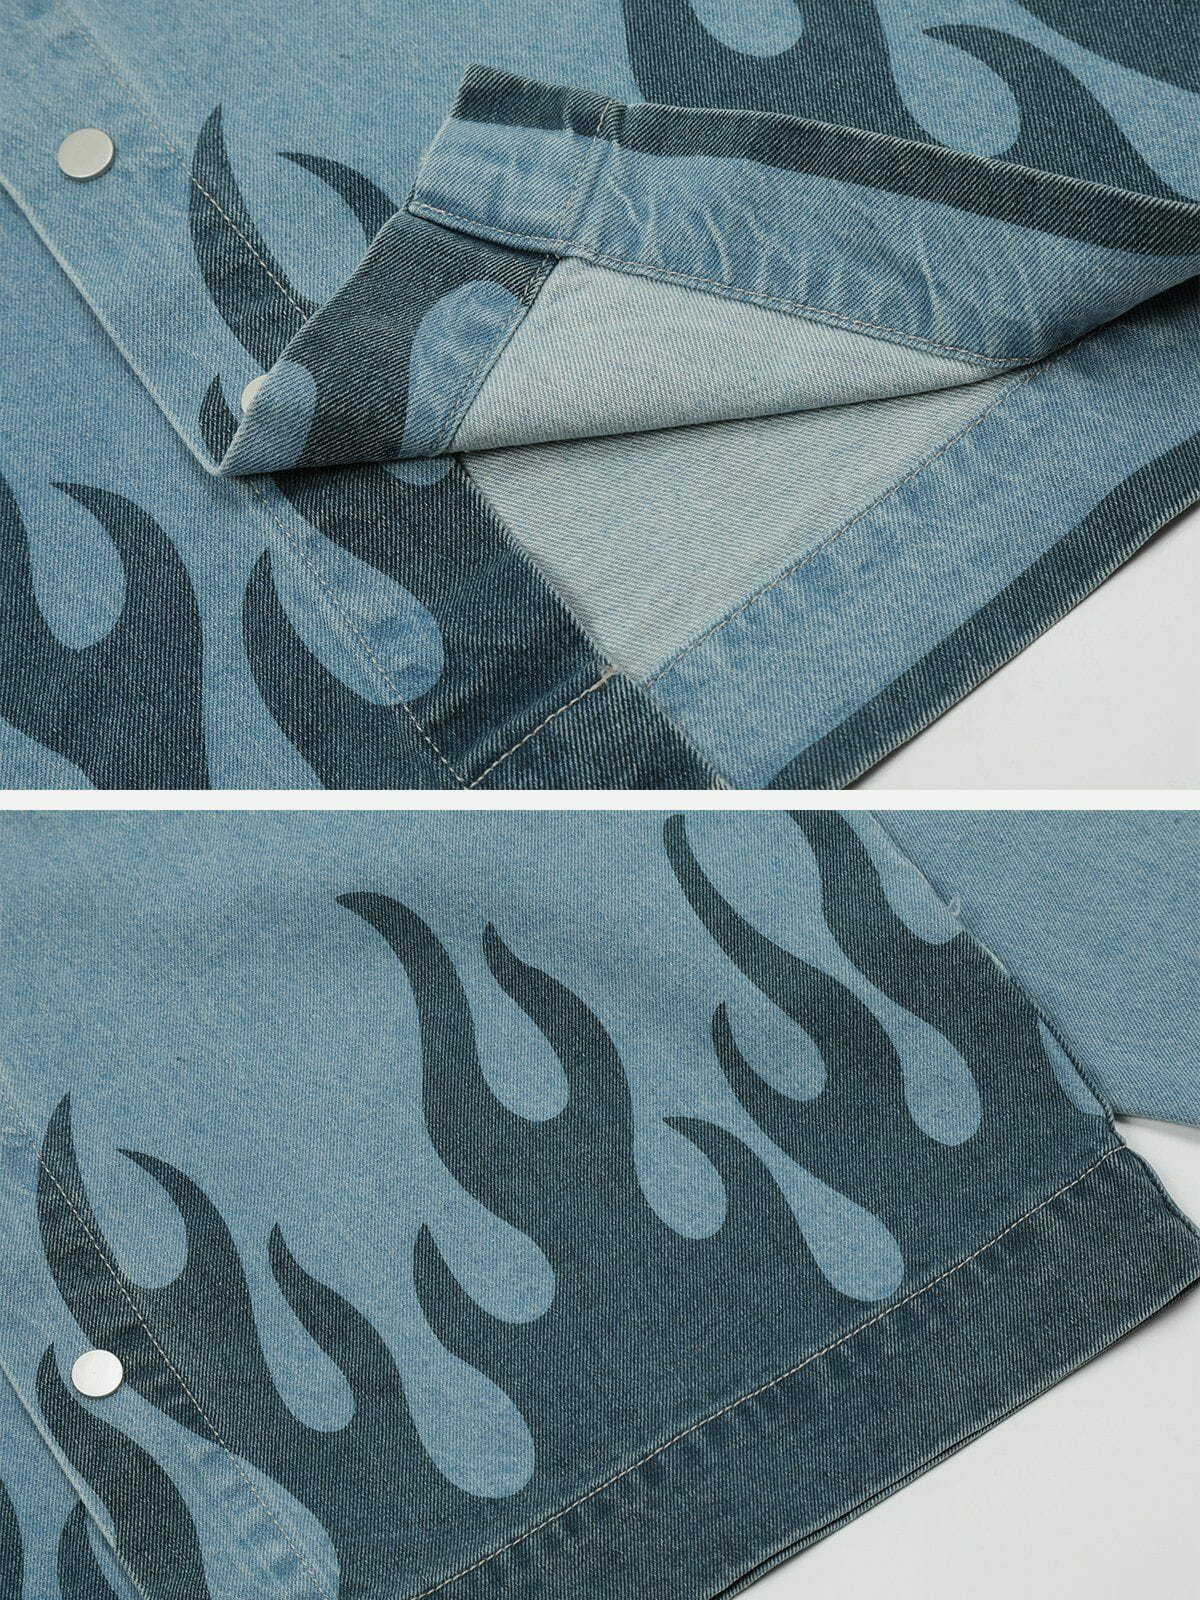 flame print denim jacket edgy & vibrant streetwear 5959